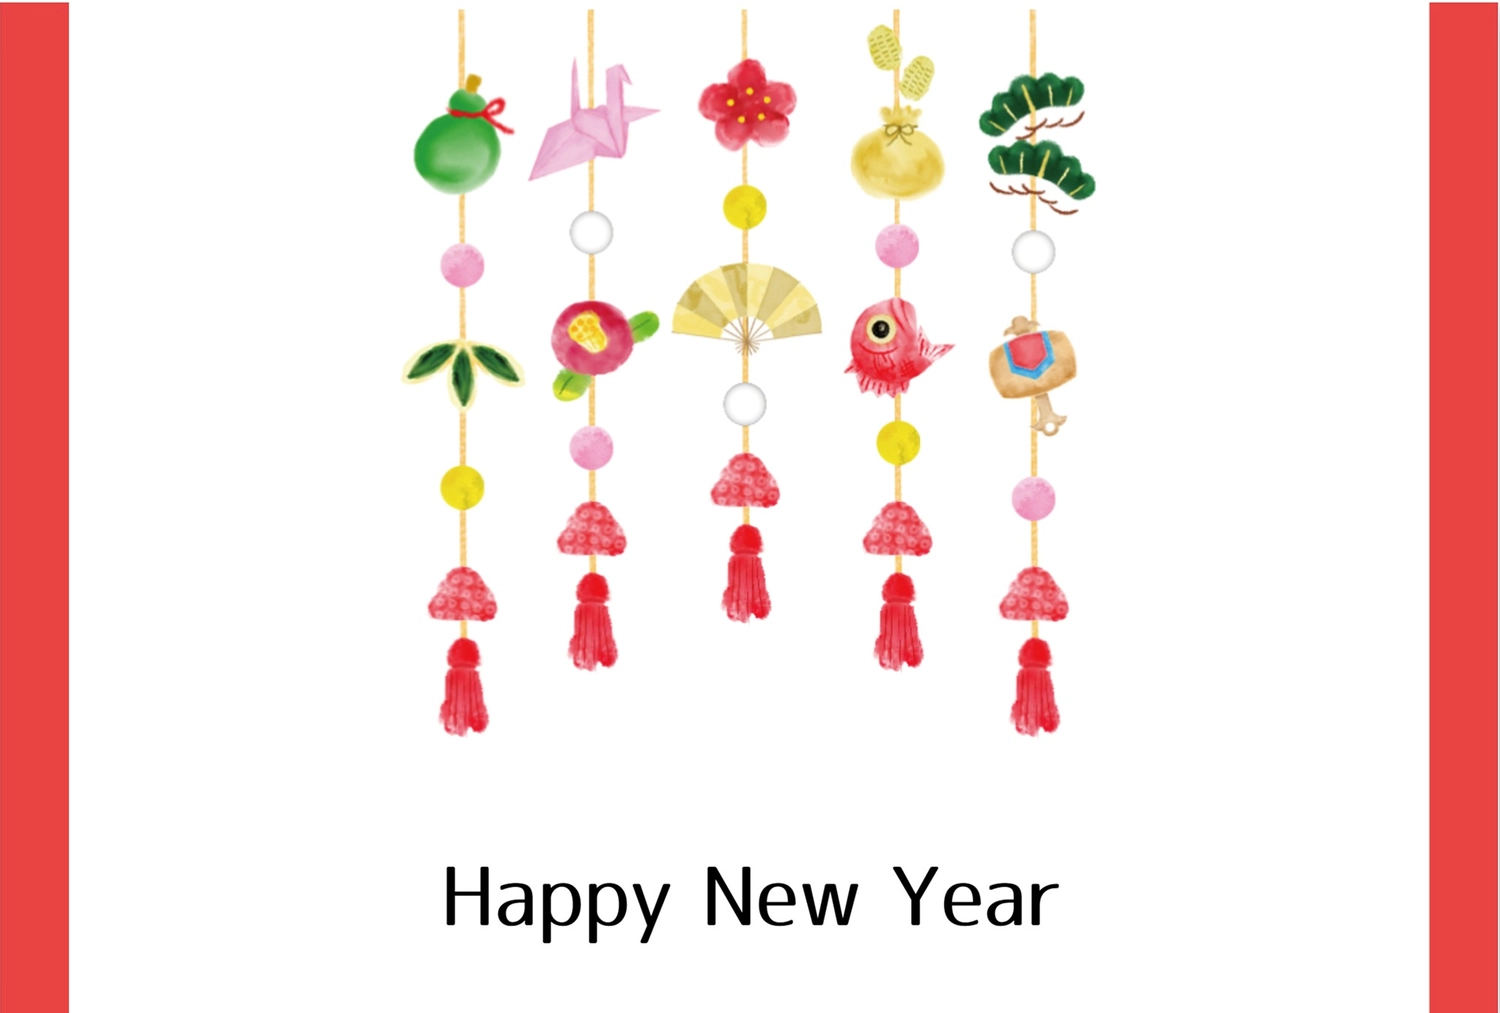 正月飾りの年賀状, 鯛, 吊るし飾り, 余白, 年賀状テンプレート